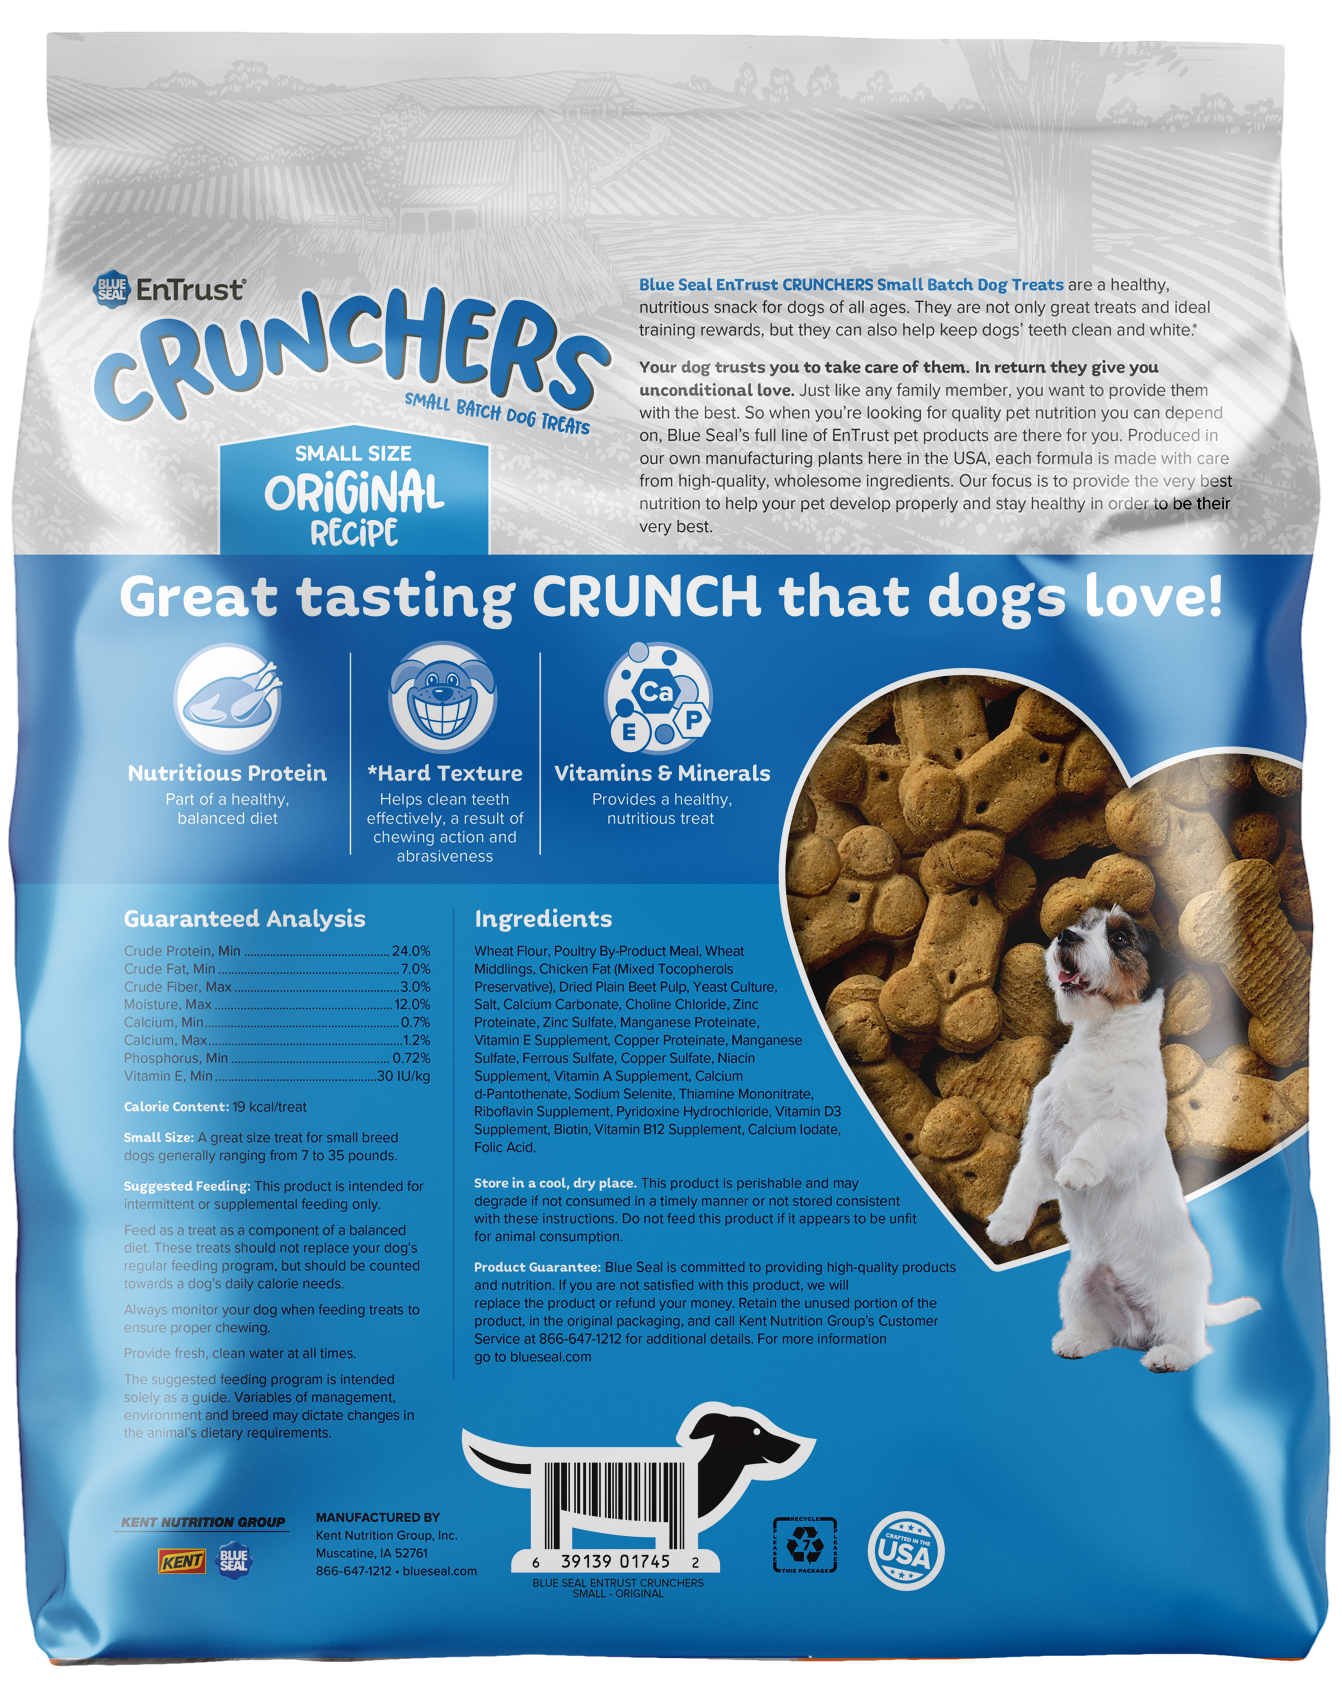 Crunchers - Original Recipe